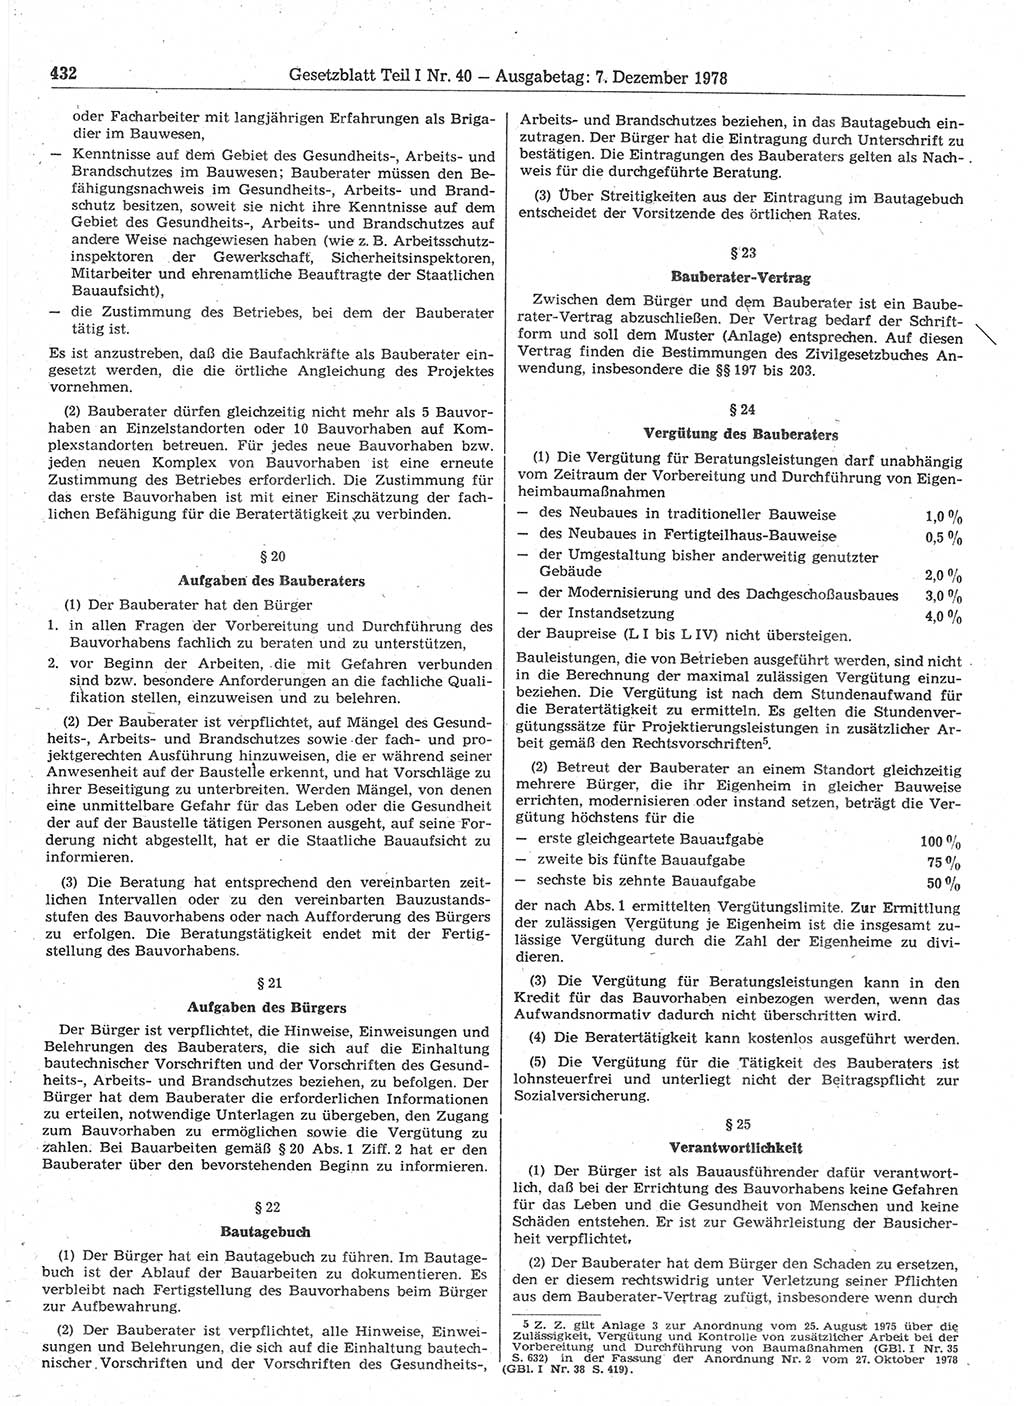 Gesetzblatt (GBl.) der Deutschen Demokratischen Republik (DDR) Teil Ⅰ 1978, Seite 432 (GBl. DDR Ⅰ 1978, S. 432)